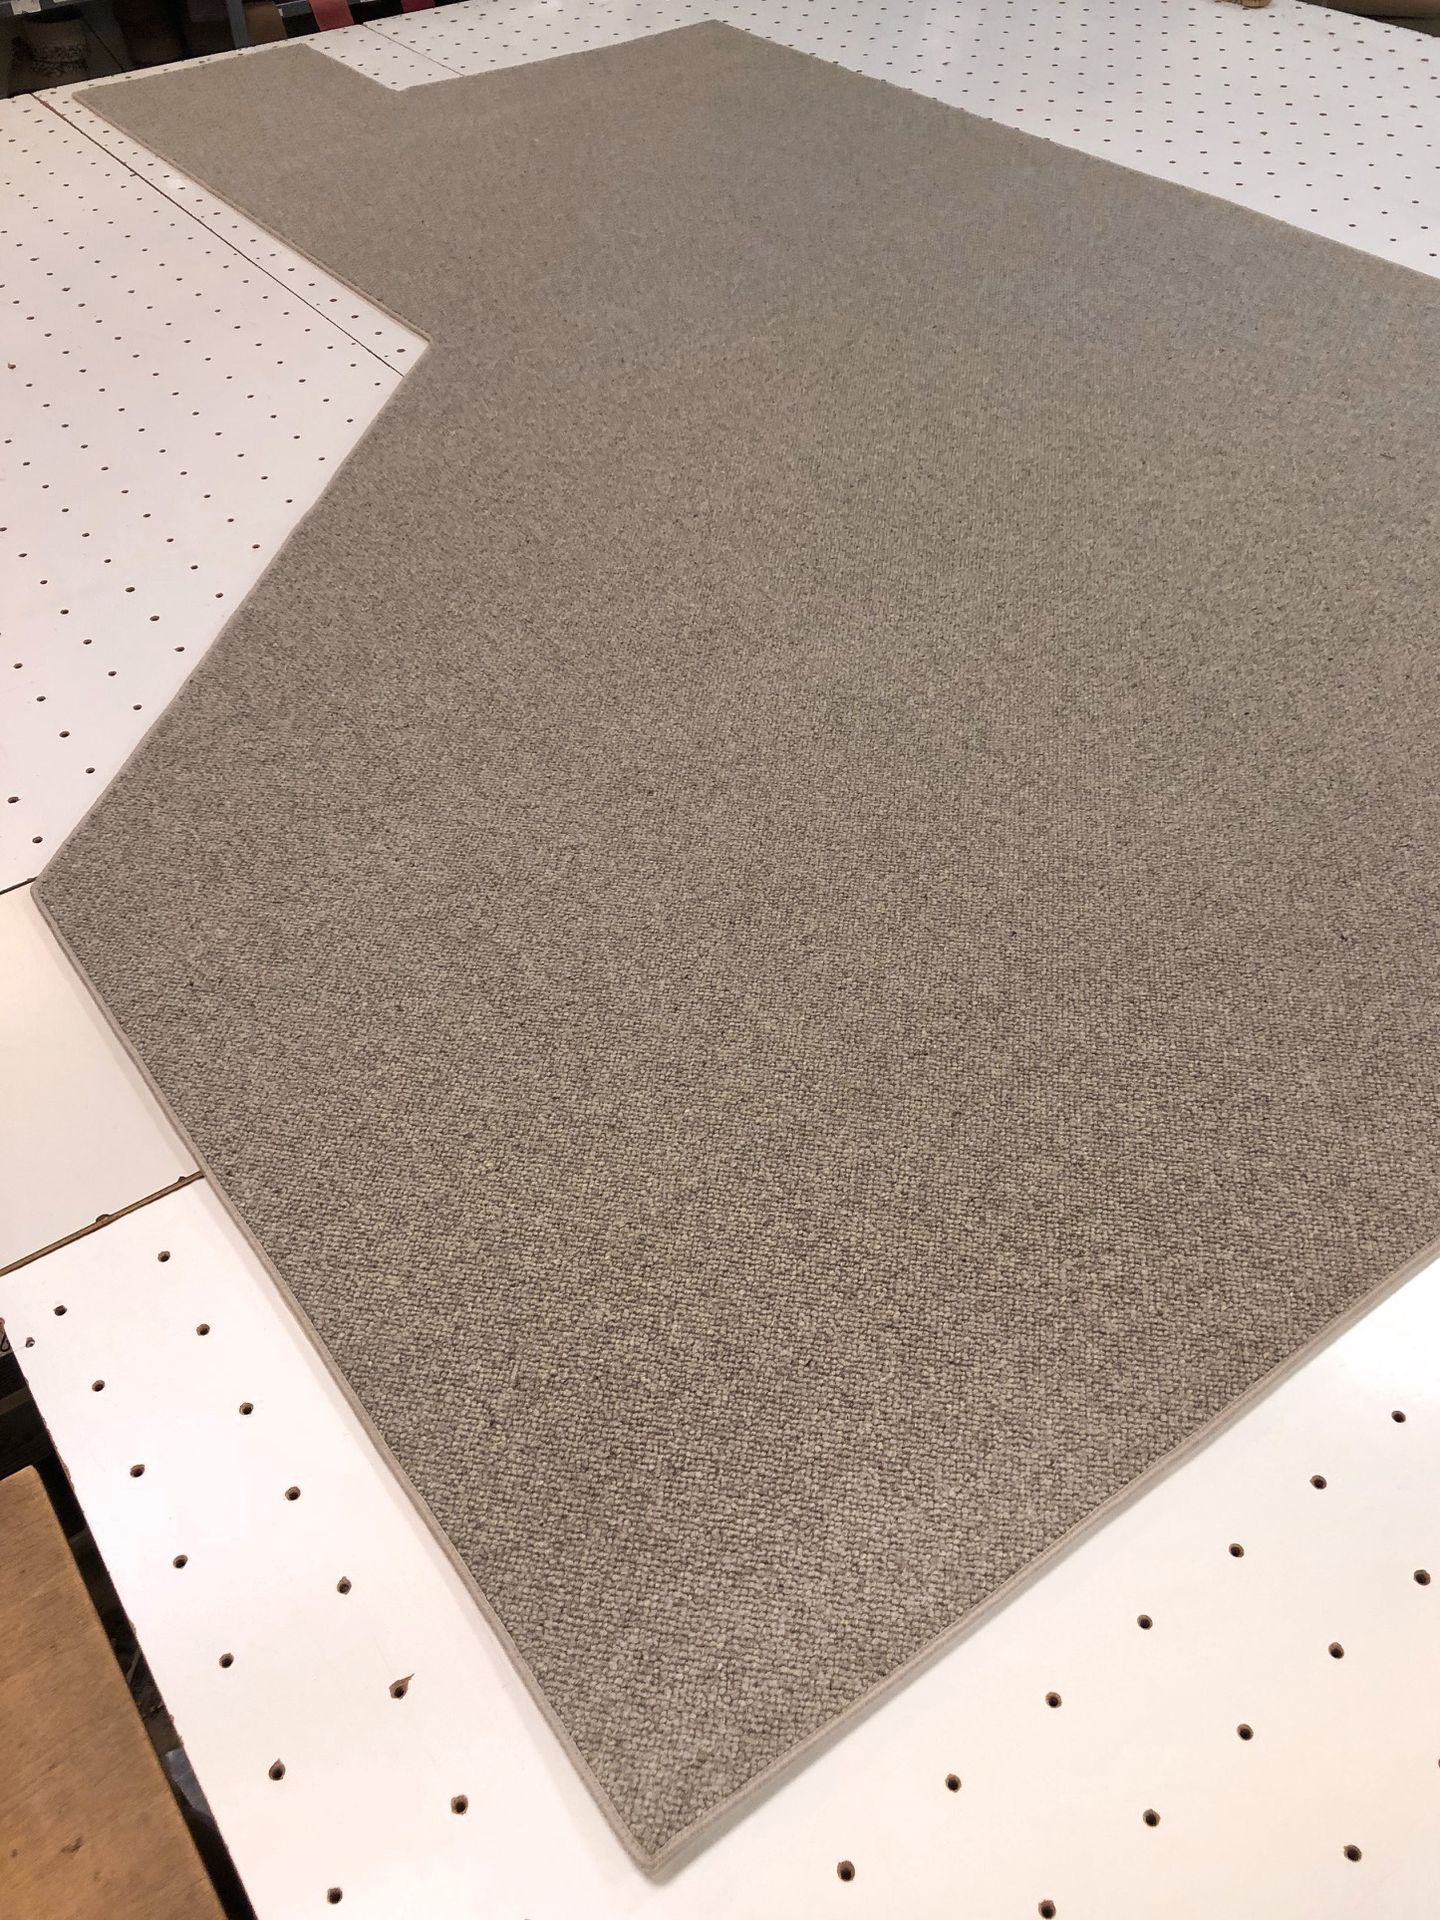 Foto aus der Produktion eines sehr aufwendig nach Schablone gefertigten Teppichs für einen Erkerausschnitt.